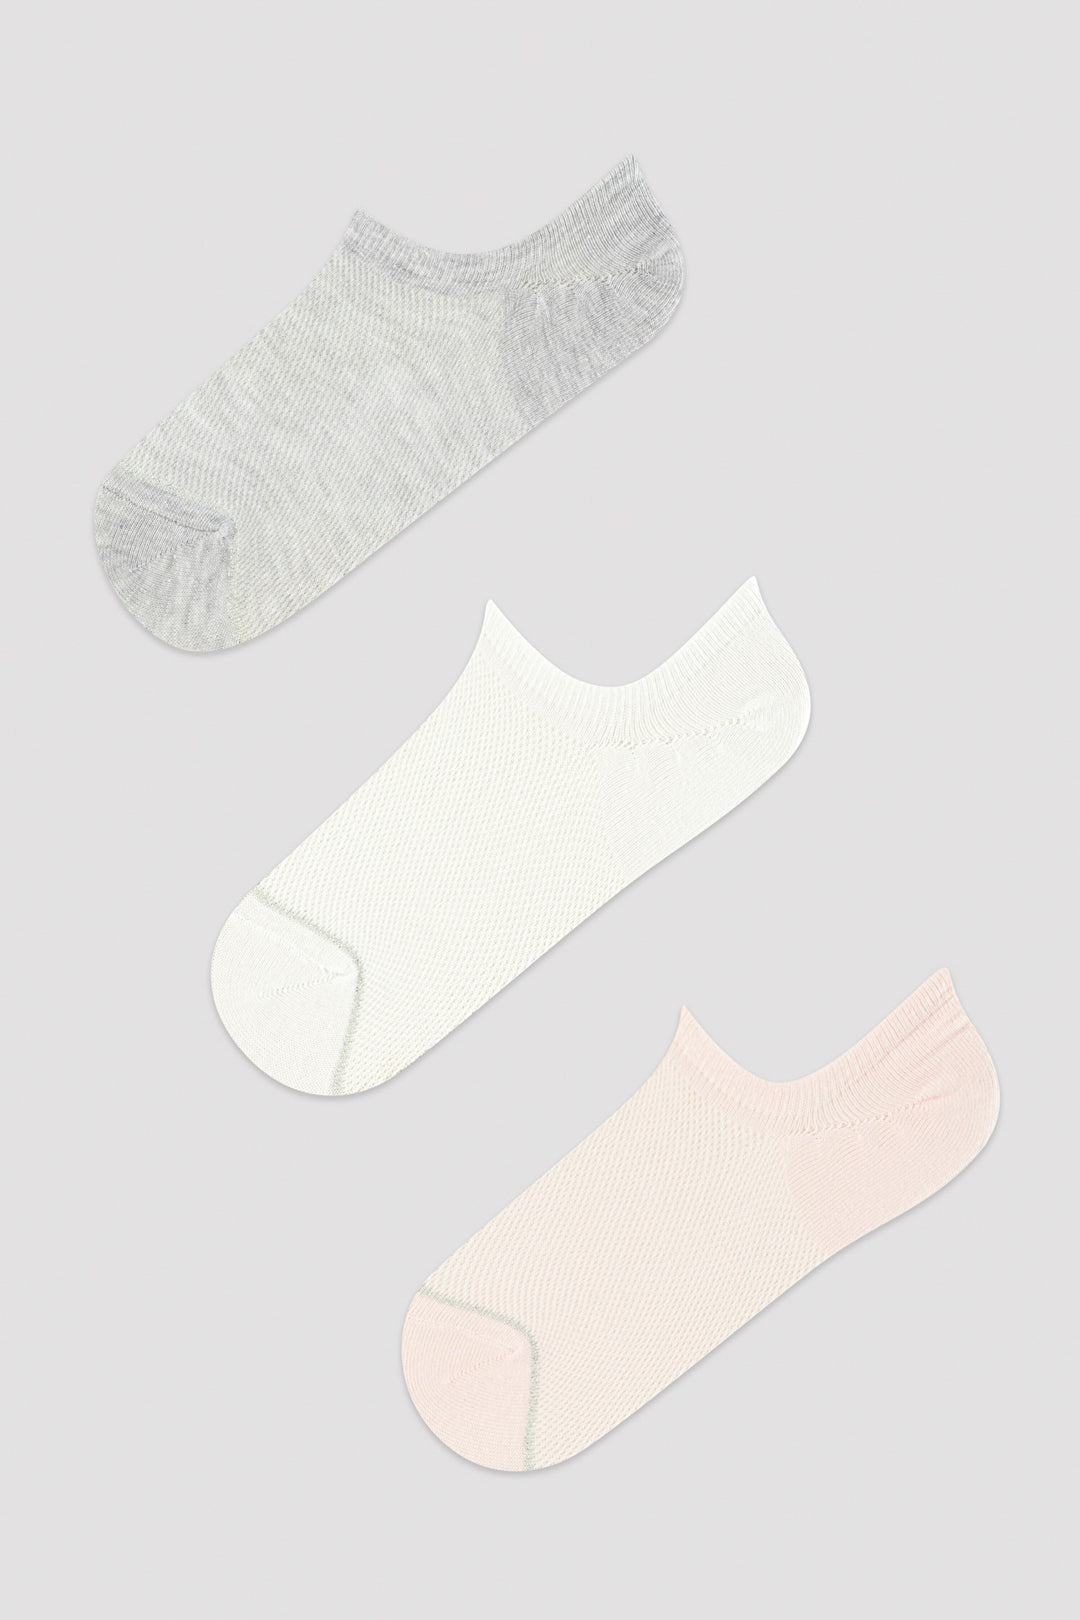 Basic Mesh 3in1 Liner Socks